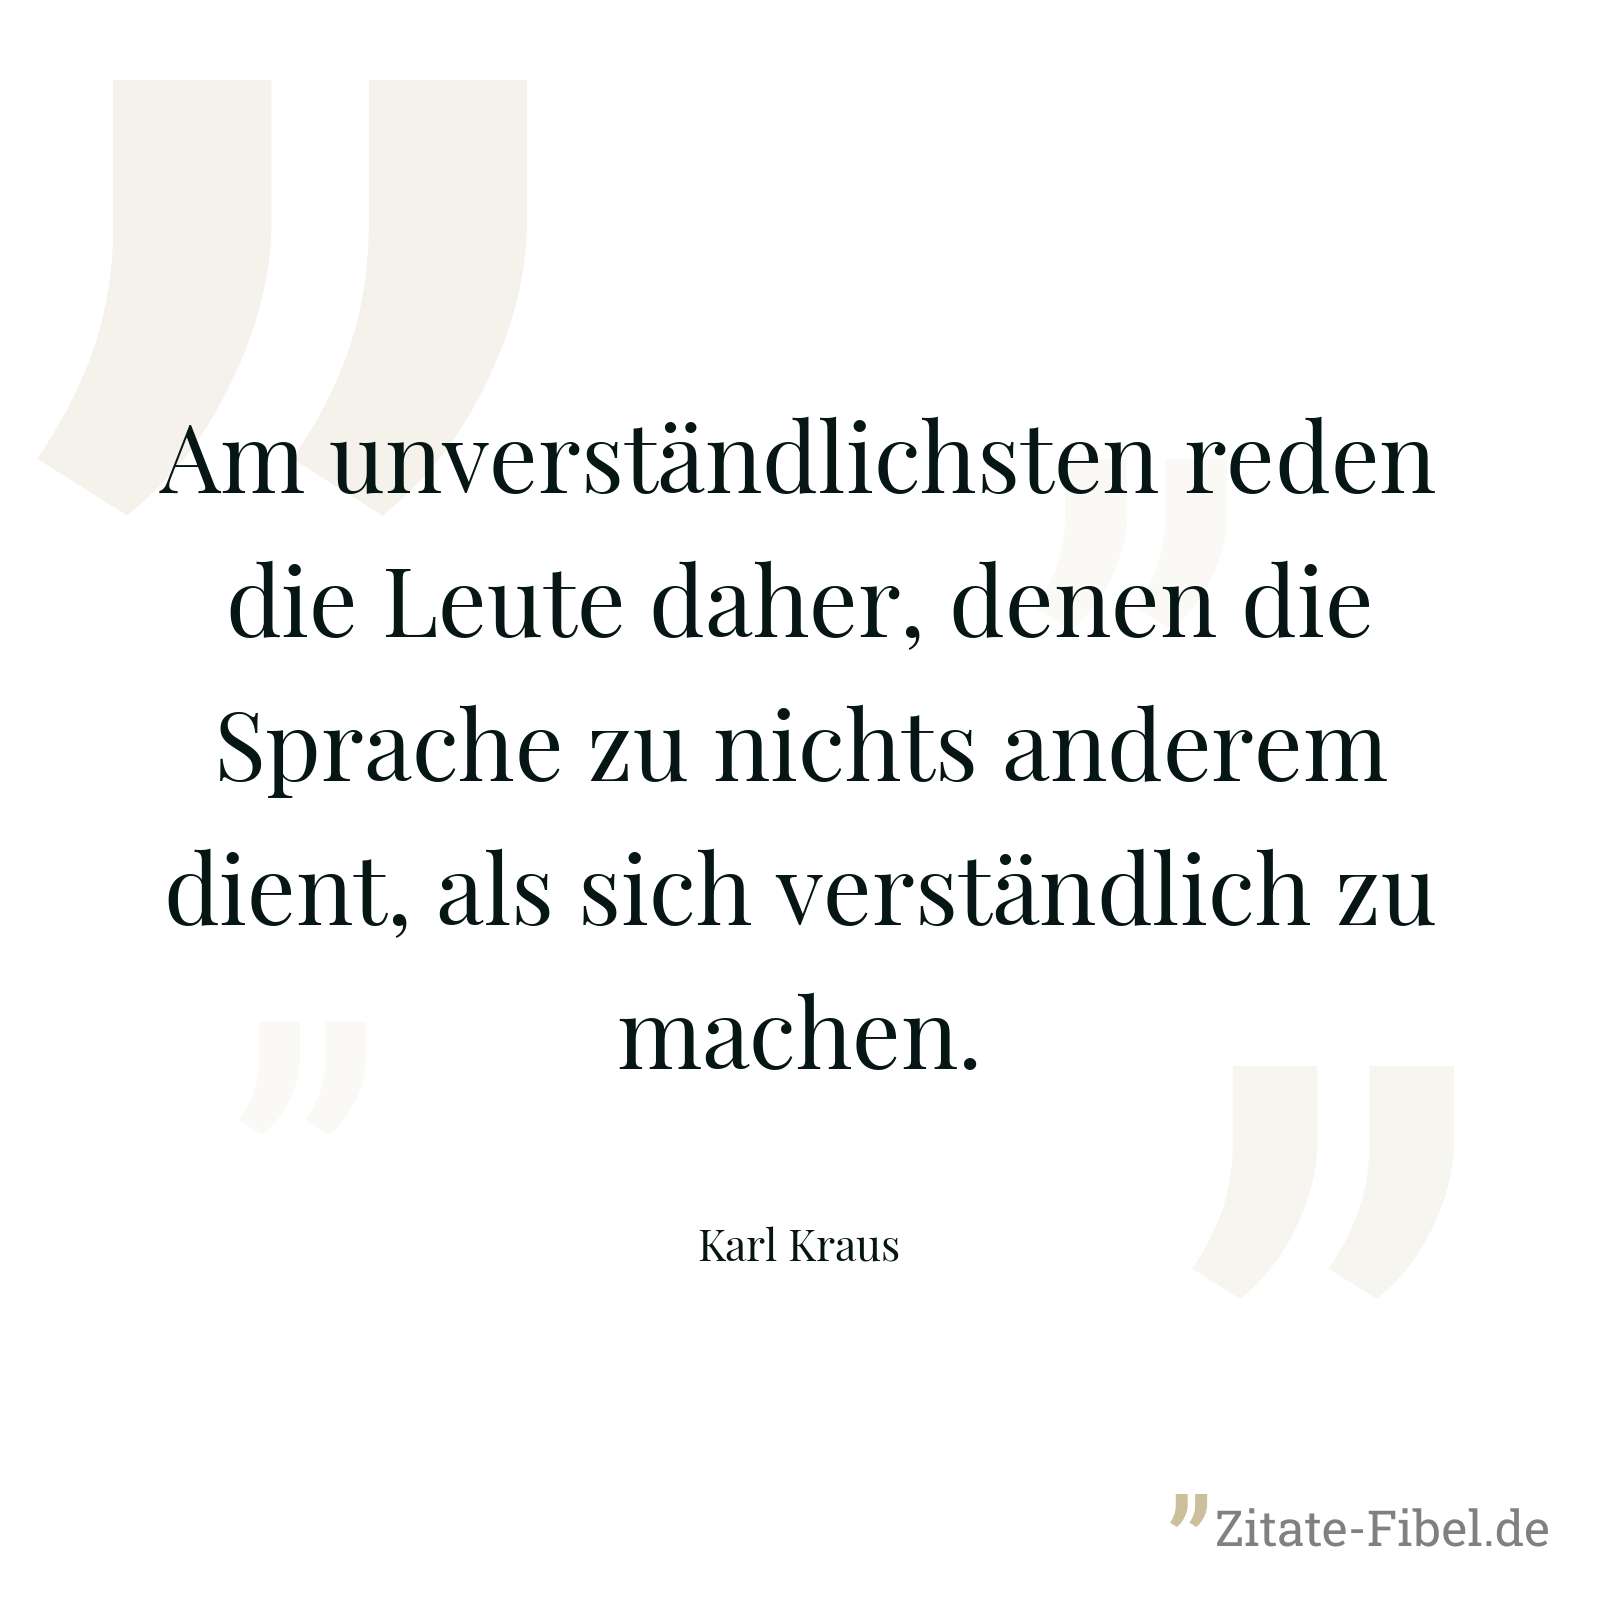 Am unverständlichsten reden die Leute daher, denen die Sprache zu nichts anderem dient, als sich verständlich zu machen. - Karl Kraus